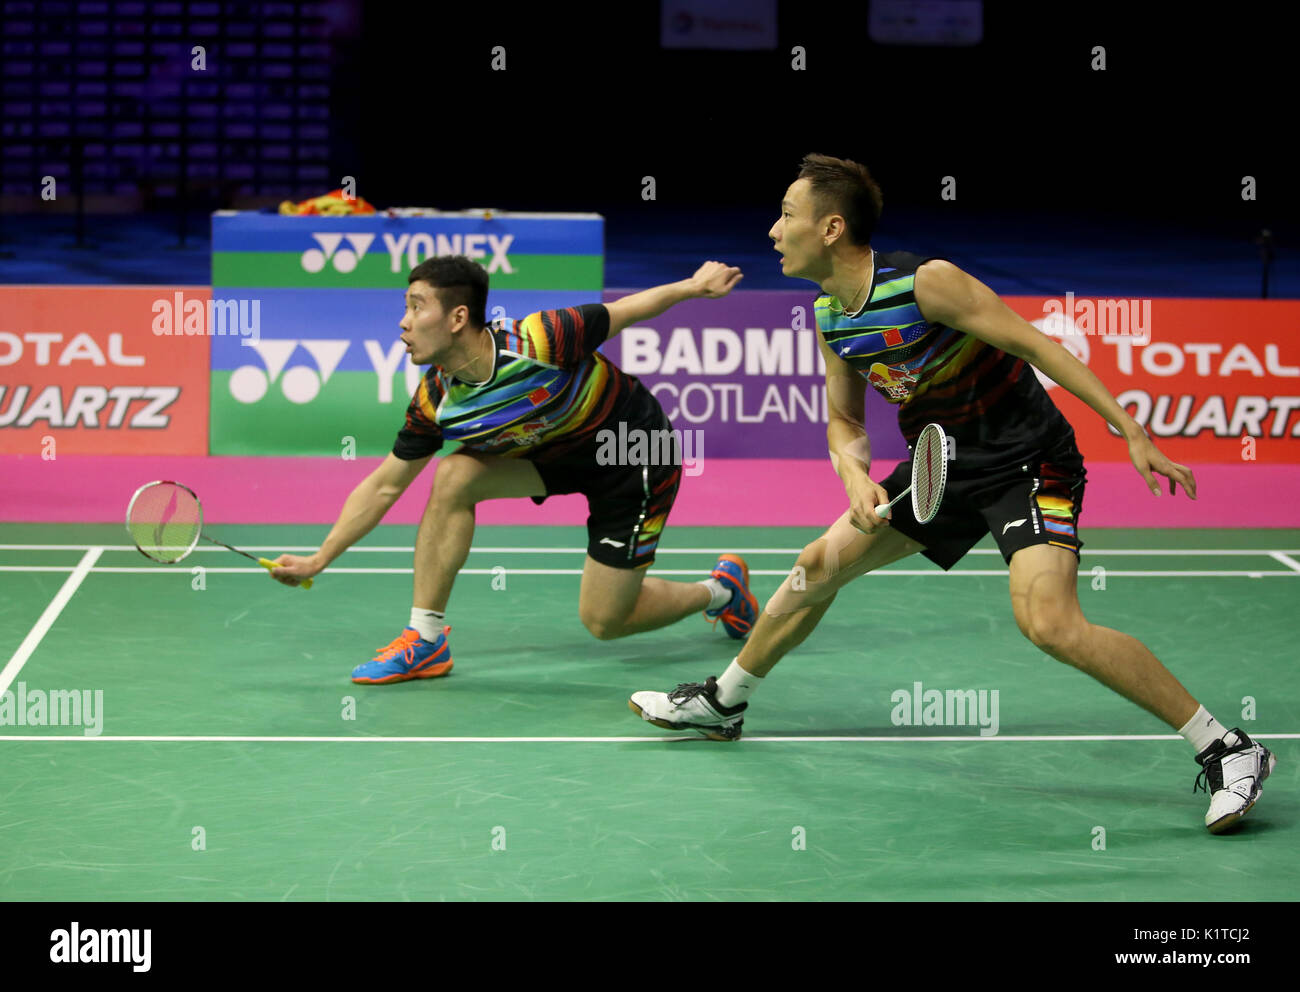 zhangyu badminton live